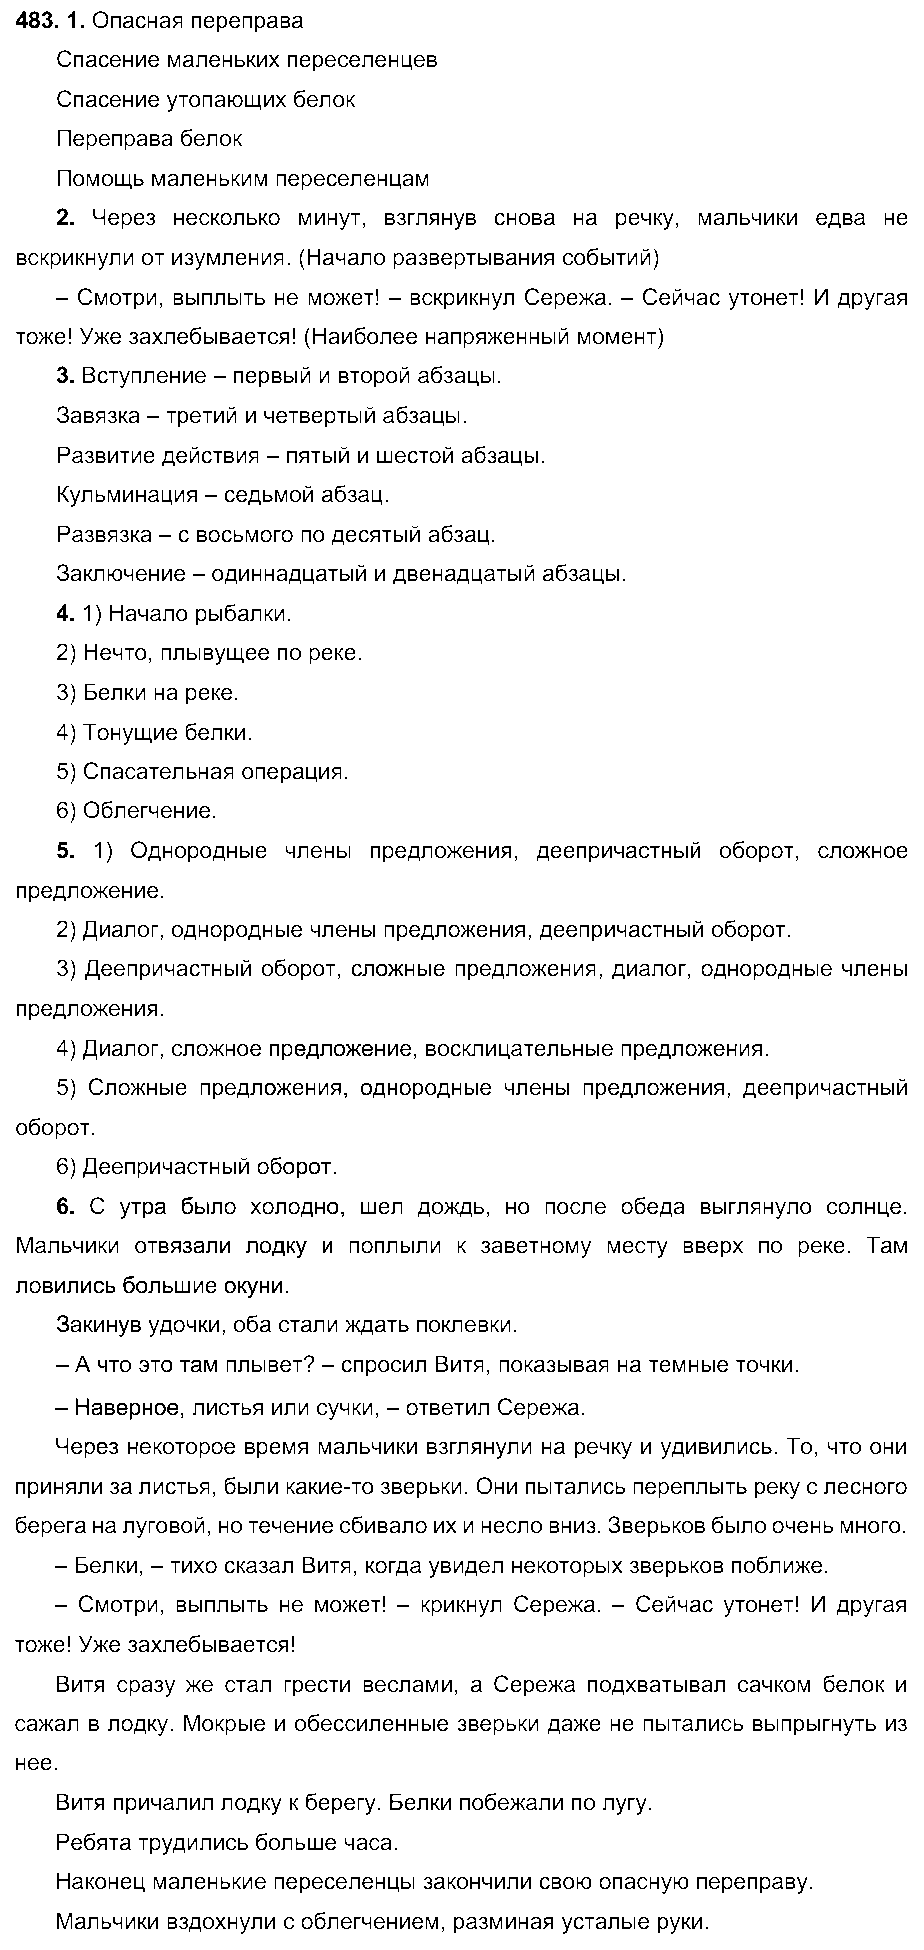 ГДЗ Русский язык 6 класс - 483